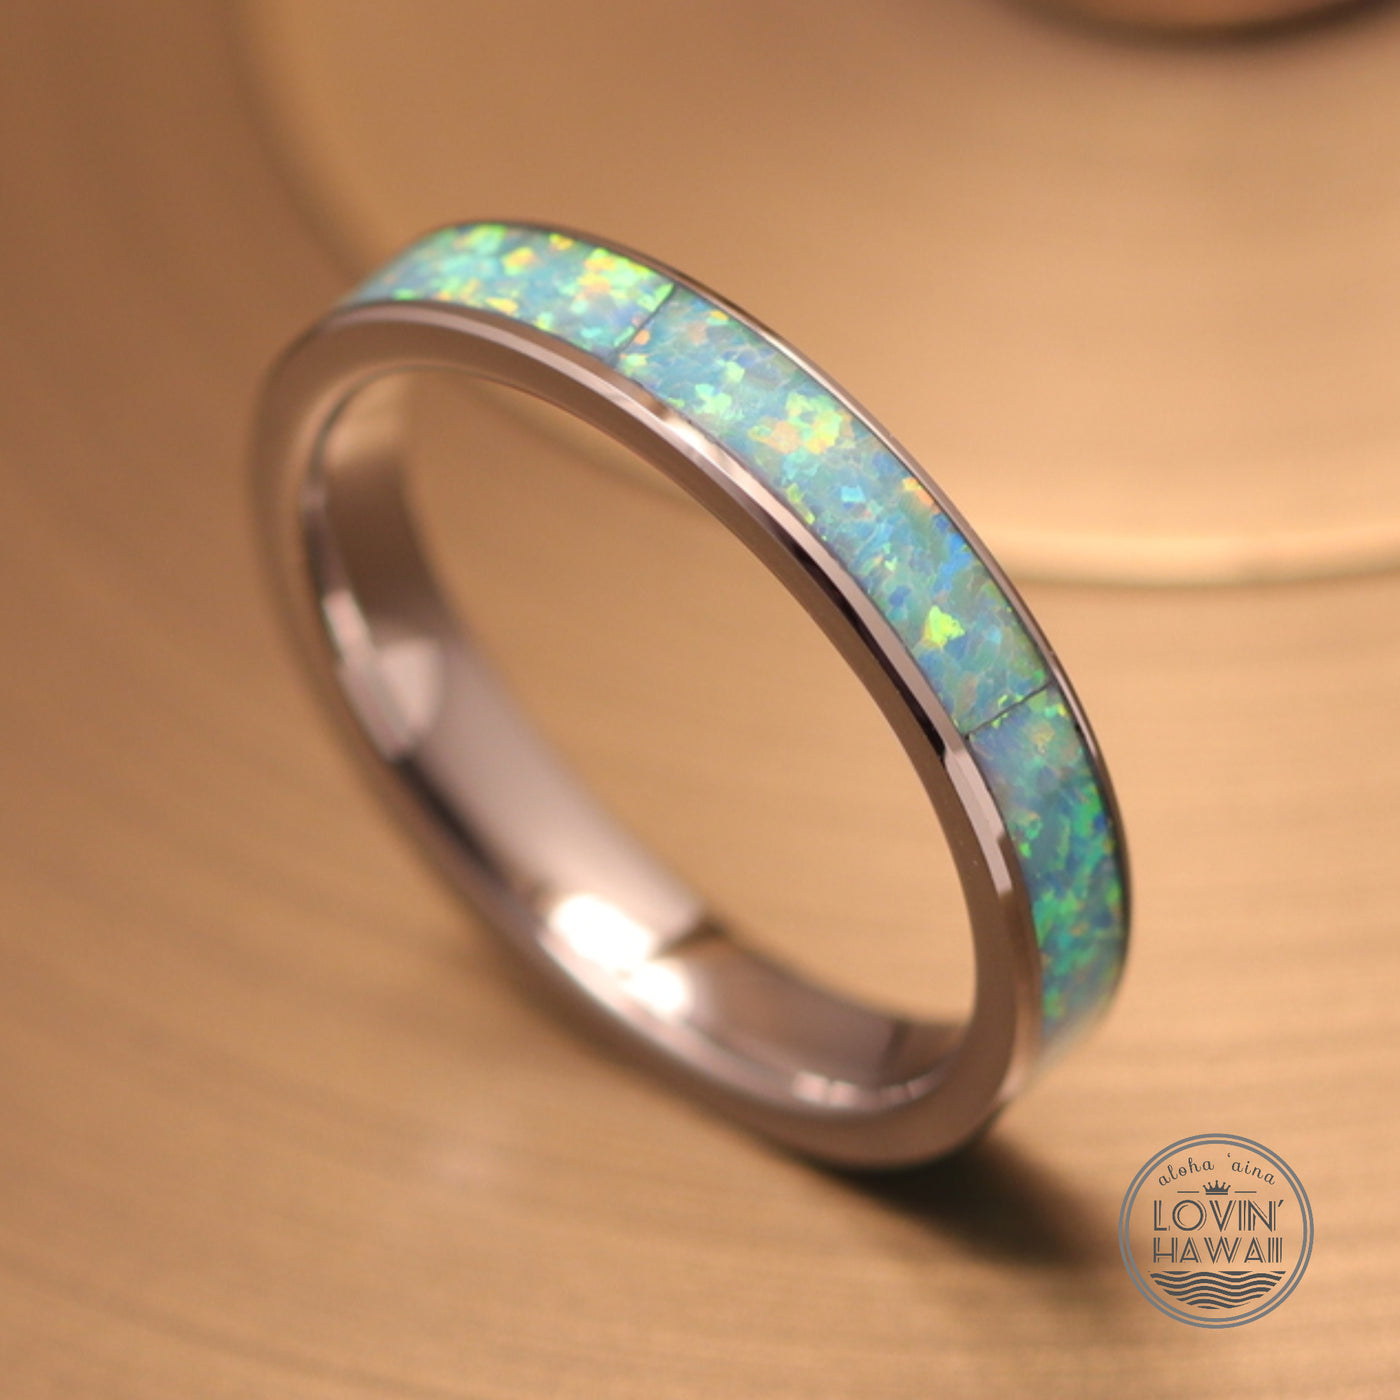 Light blue opal rings